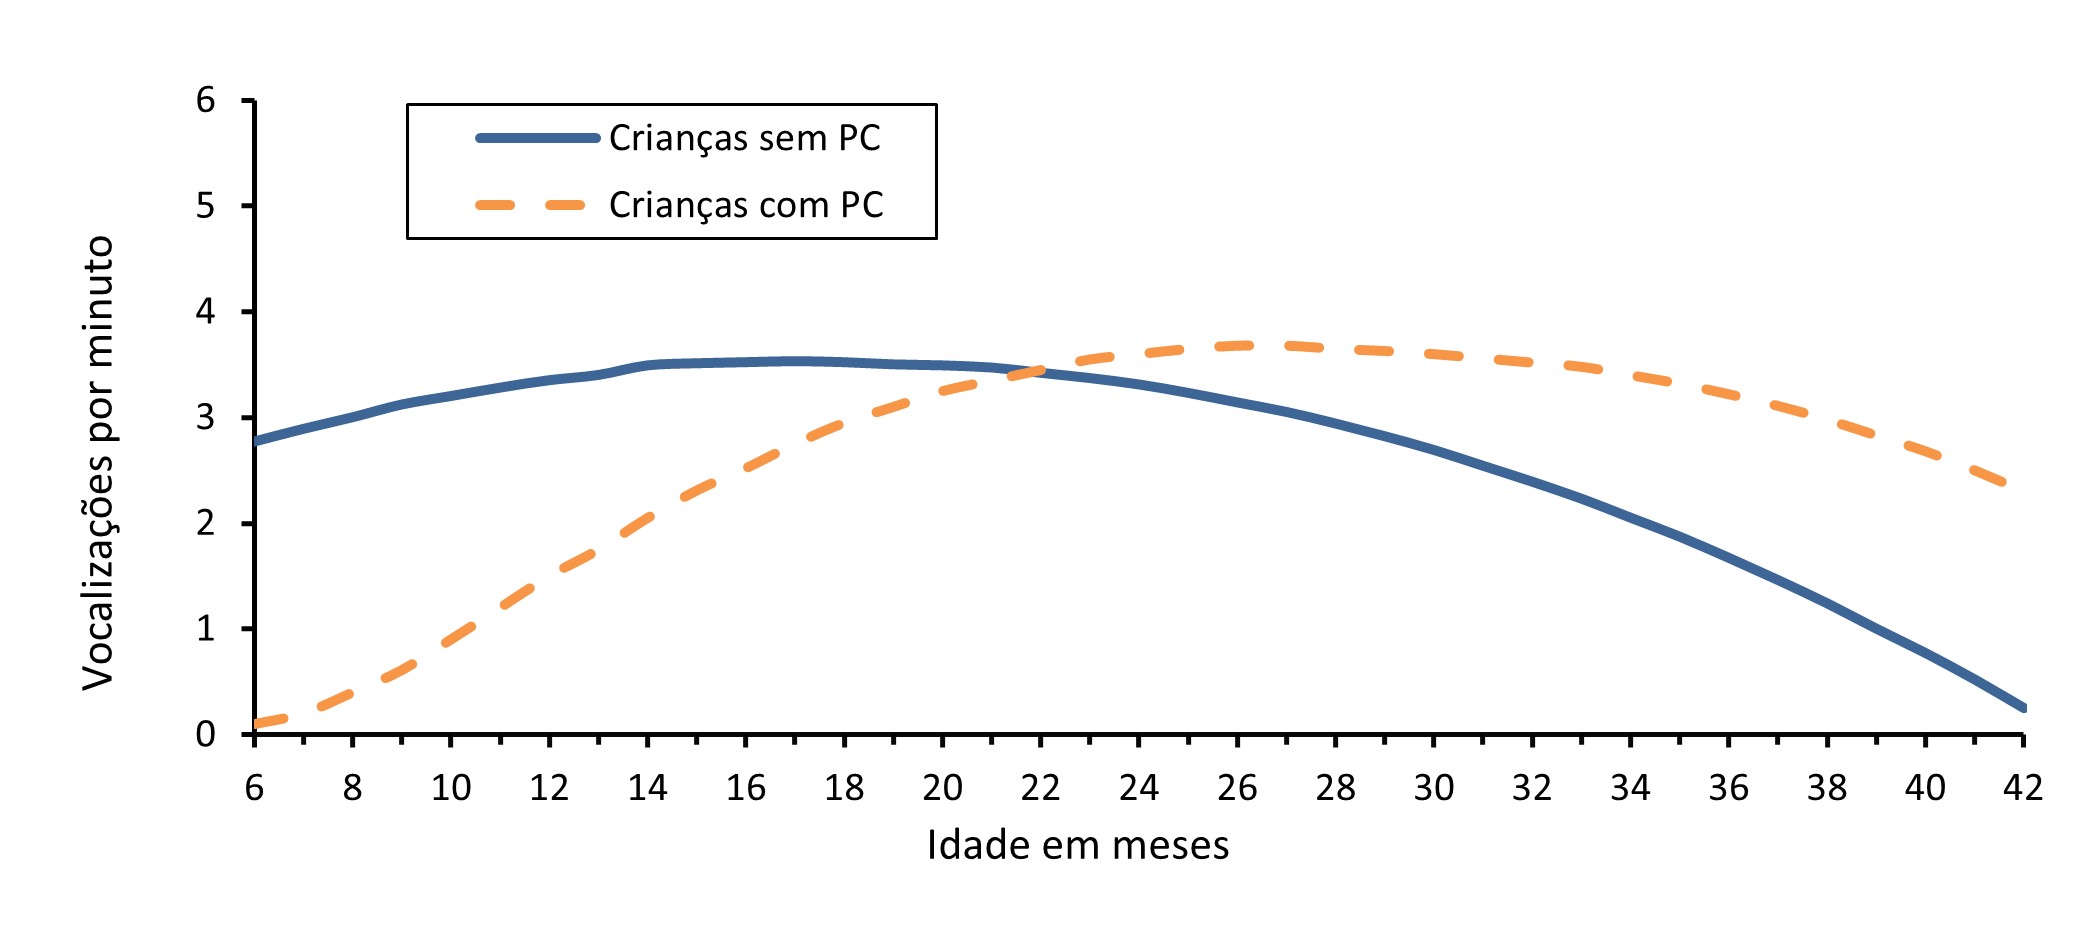 Figura 3. Trajetórias estimadas da produção de vocalizações de acordo com os resultados do ECI-Portugal para as crianças com e sem perturbações da comunicação (PC)